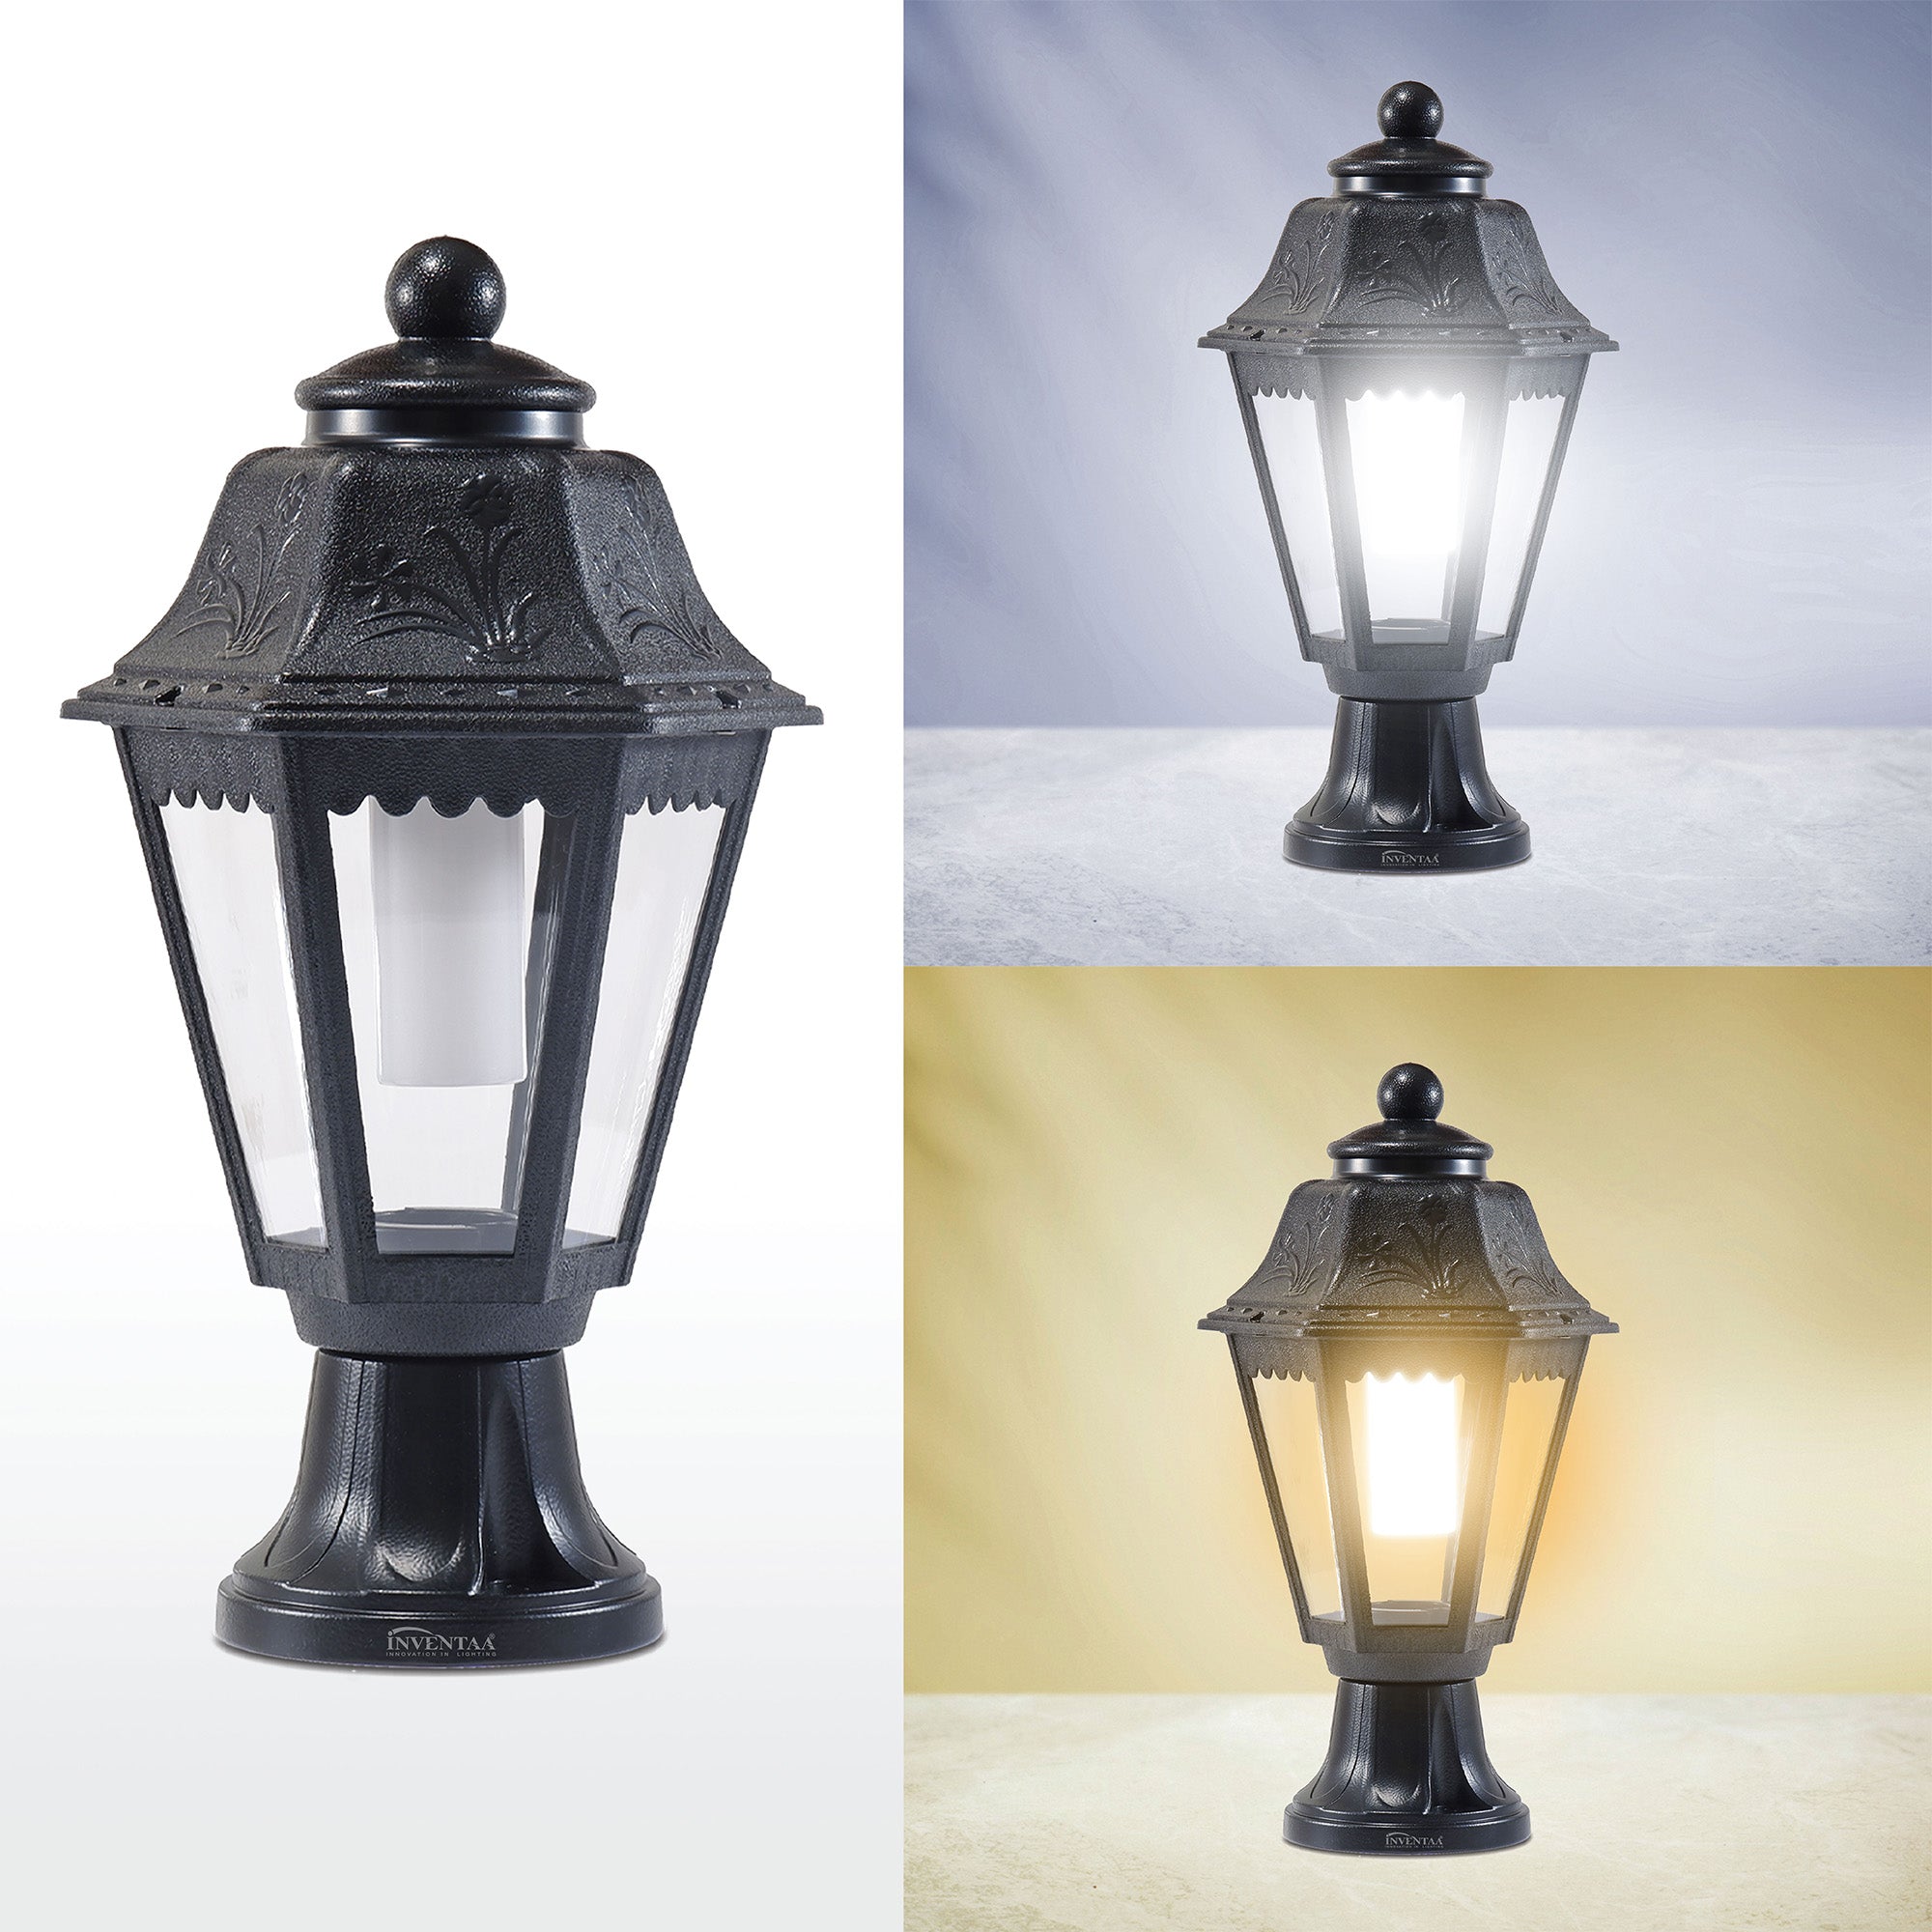 Tacita LED Gate Light Cool Warm Comparison | Best LED Gate Light Model Online at affordable price Online